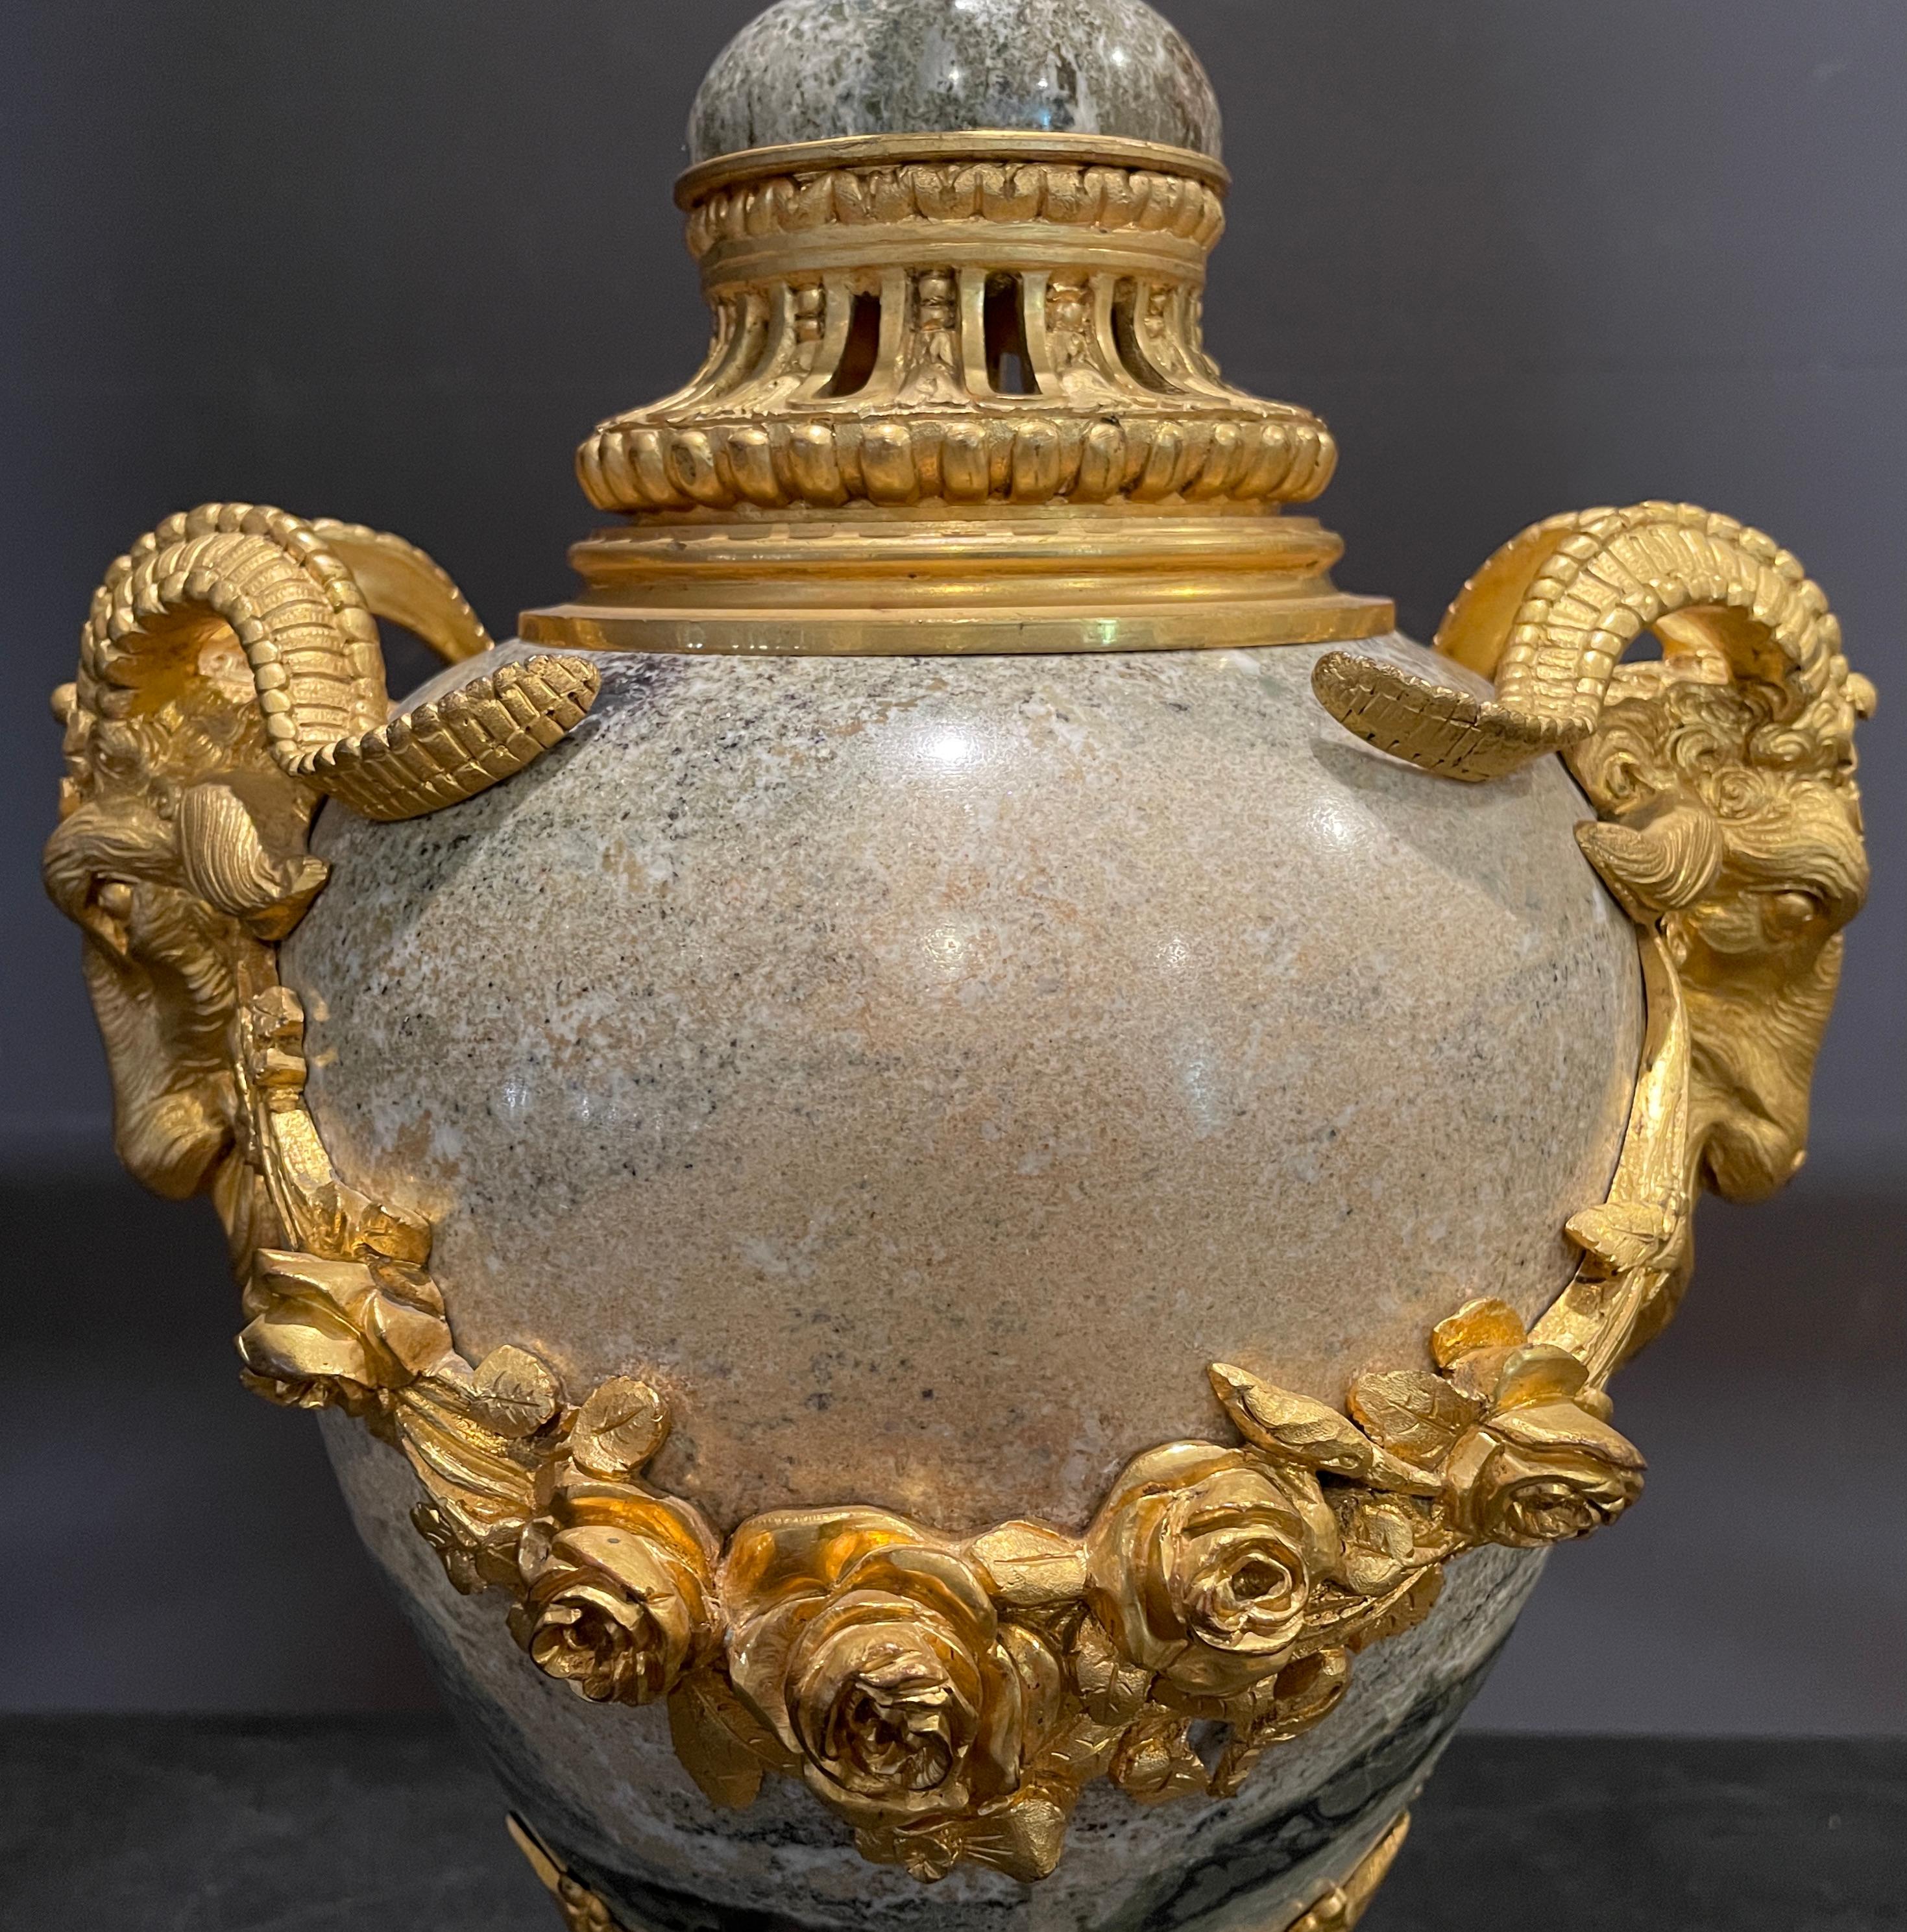 Vergoldete Marmorlampe aus dem 19. Jahrhundert mit Widderkopf und Rosenkranzdetails.
19